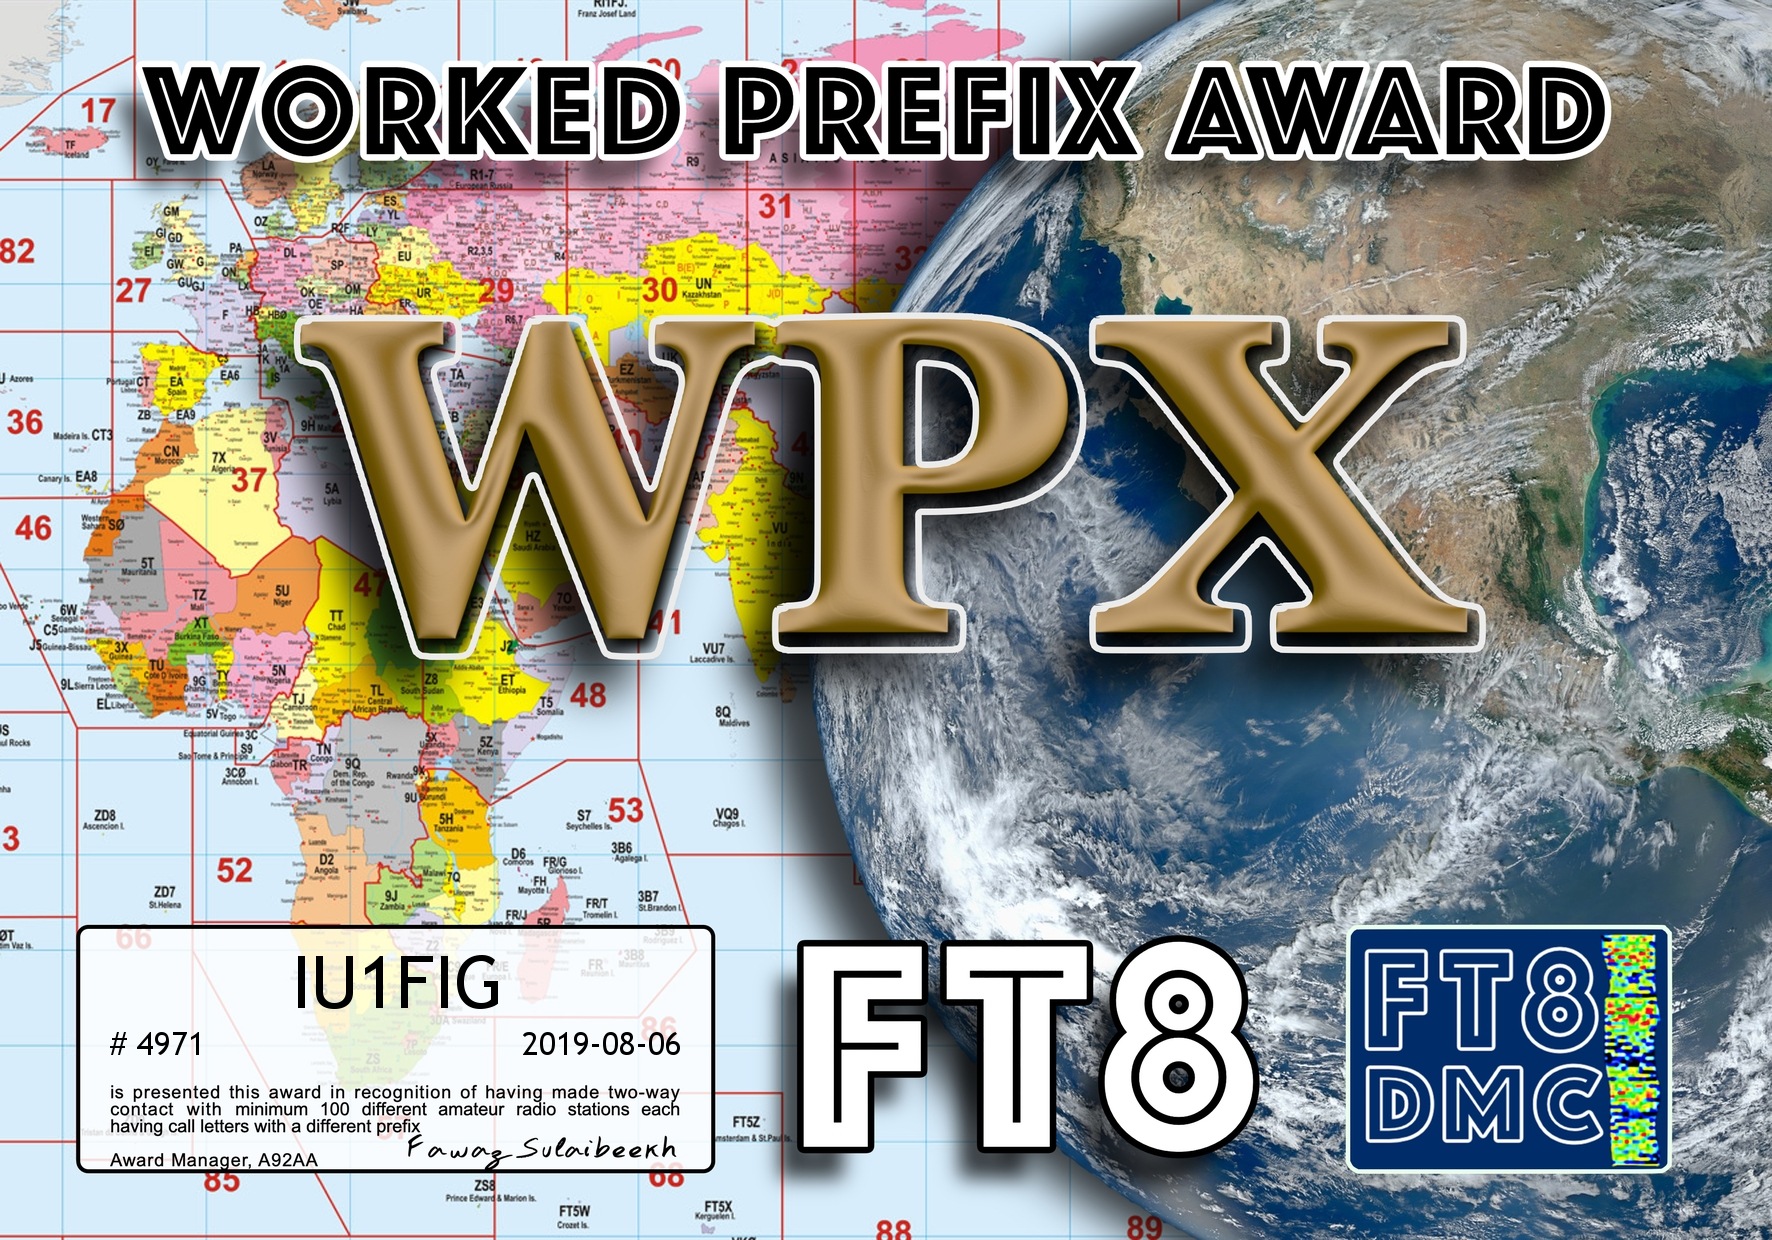 IU1FIG-WPX-100.jpg